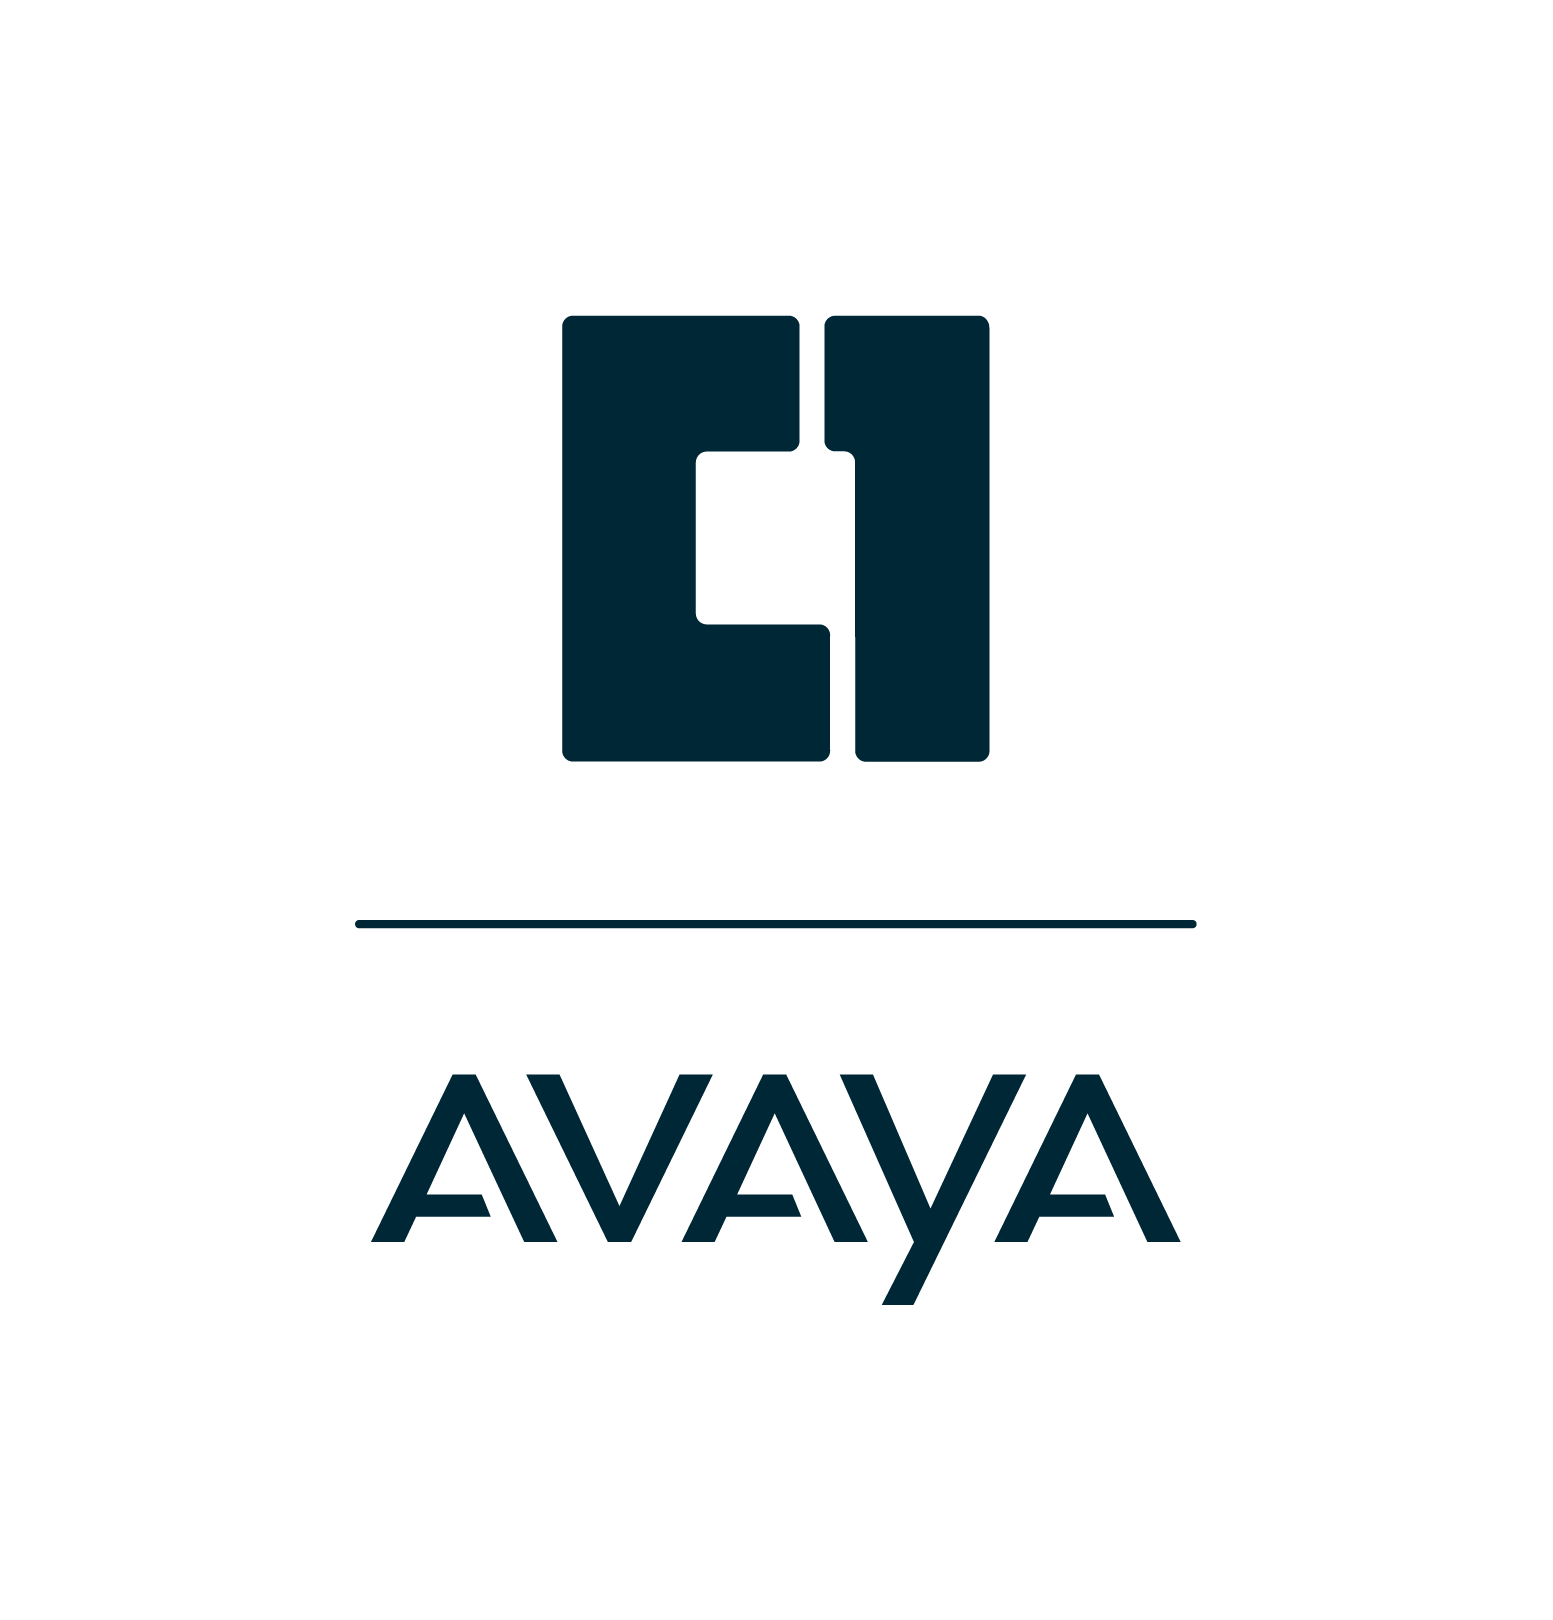 Avaya (A)